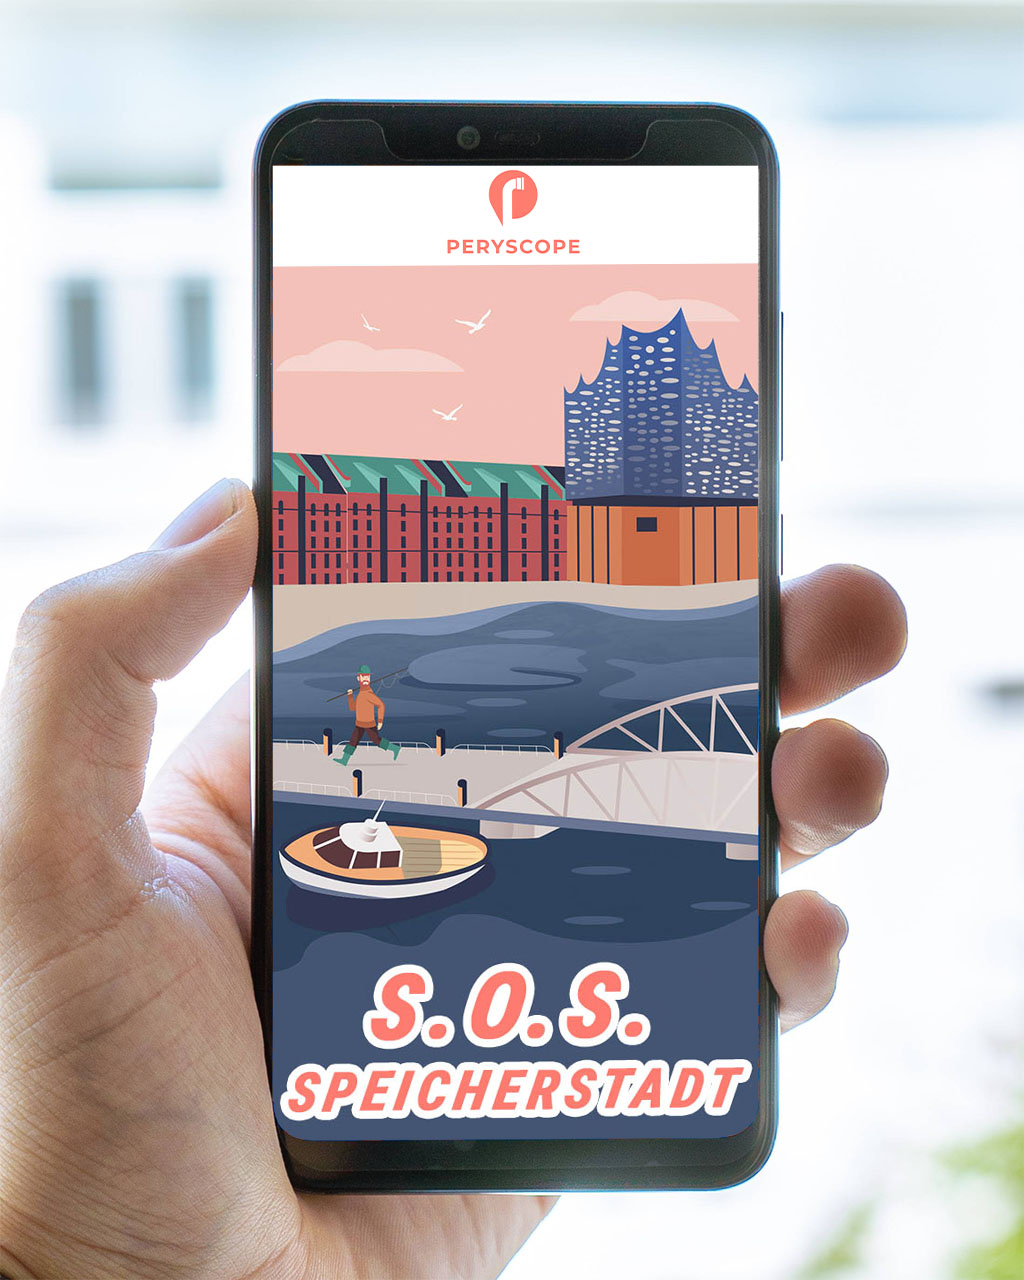 Mit Peryscope Stadtführungen und Stadtrallyes entdeckst du die Stadt mit deinem Smartphone.

Peryscope - Explore Cities Your Way.